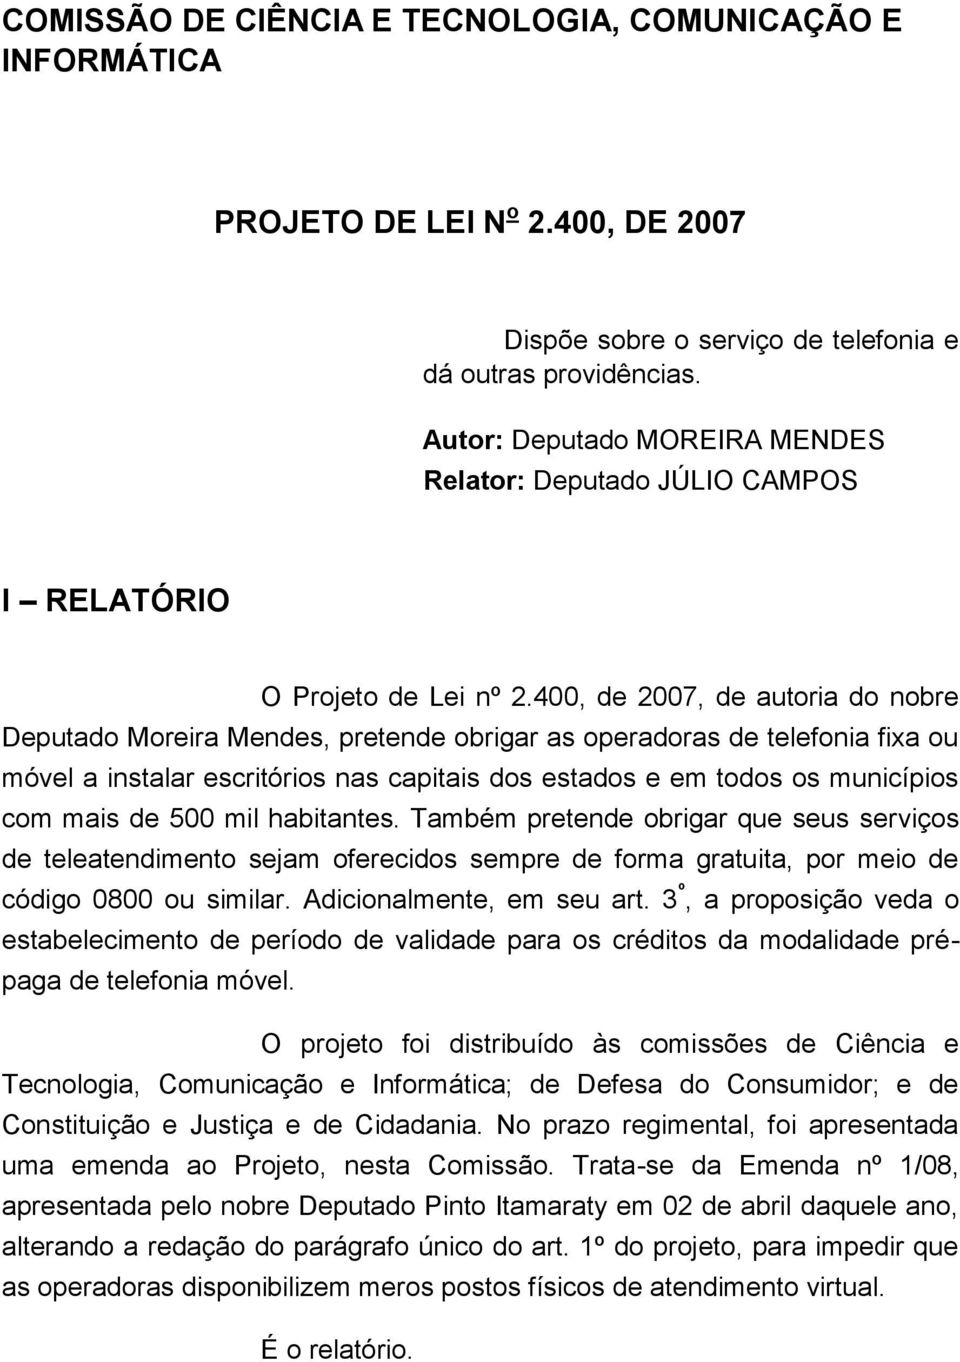 400, de 2007, de autoria do nobre Deputado Moreira Mendes, pretende obrigar as operadoras de telefonia fixa ou móvel a instalar escritórios nas capitais dos estados e em todos os municípios com mais